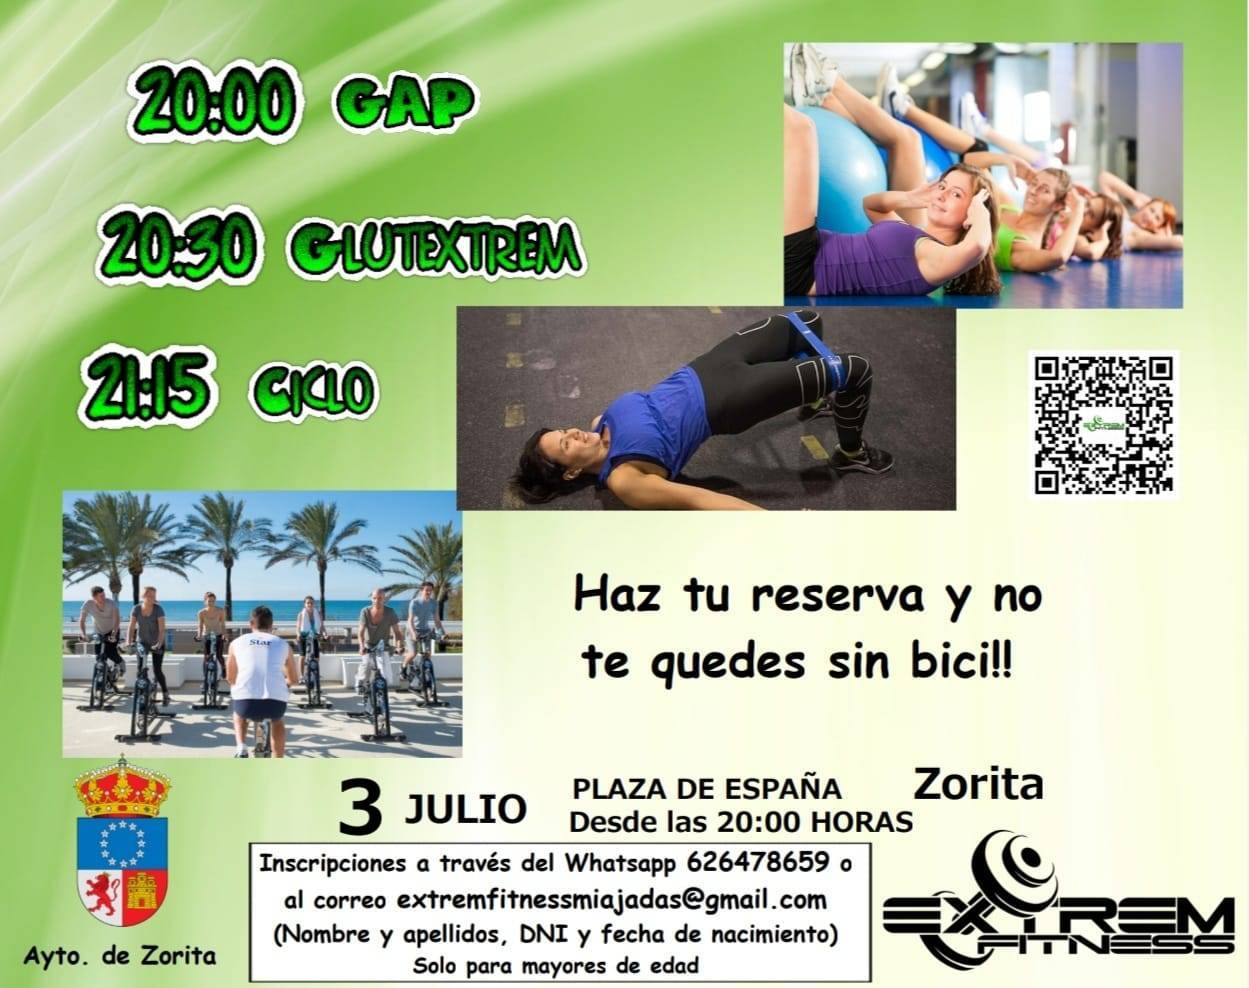 Gap, glutextrem y ciclo (julio 2021) - Zorita (Cáceres)